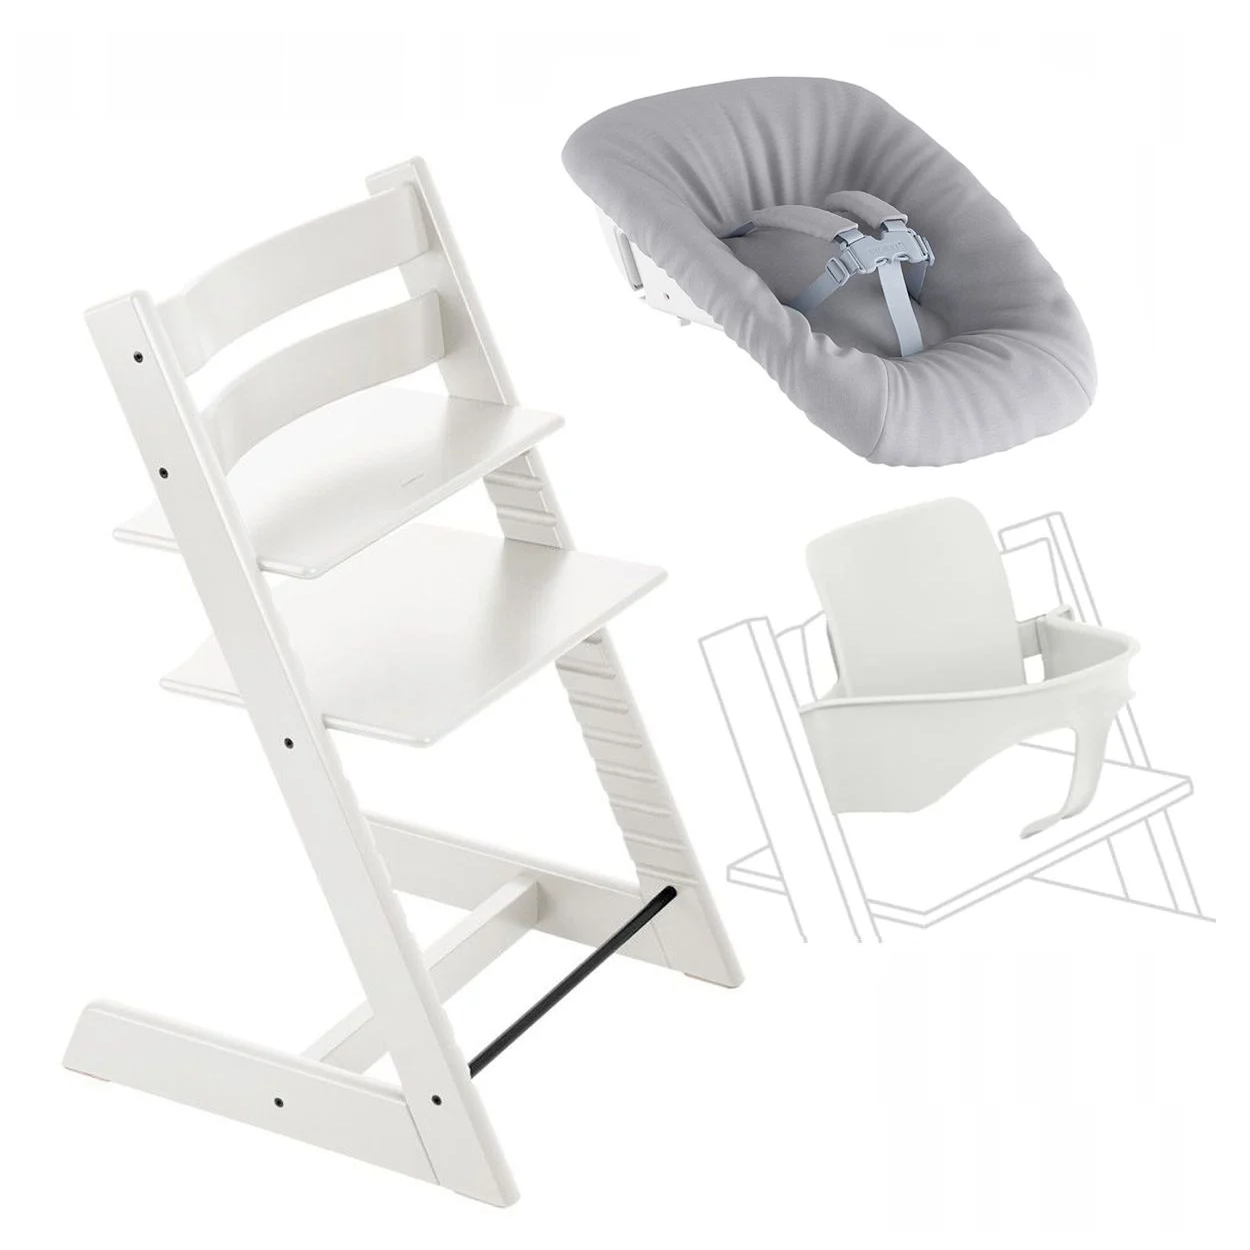 Набор Stokke Tripp Trapp White: стульчик, спинка с ограничителем Baby Set и кресло для новорожденных Newborn (k.100107.00) - фото 1